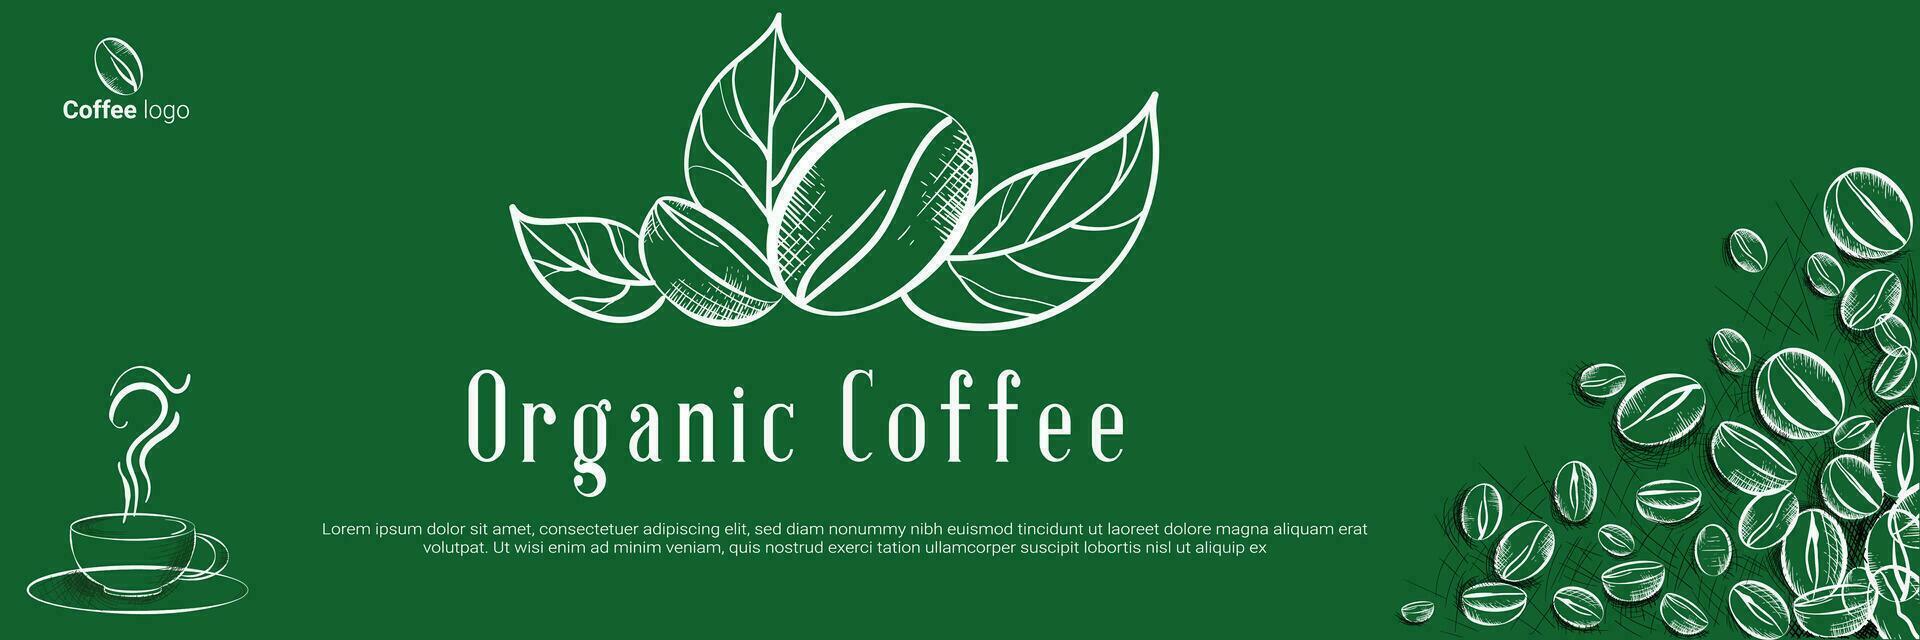 Banner organisch Kaffee Design, Vorlage Design zum Kaffee Bräter Konzept, Bäckerei Banner zum Öko Geschäft und Markt, Blume Panorama- Hintergrund mit Vektor Kaffee Bohnen Illustration im Gravur Stil.